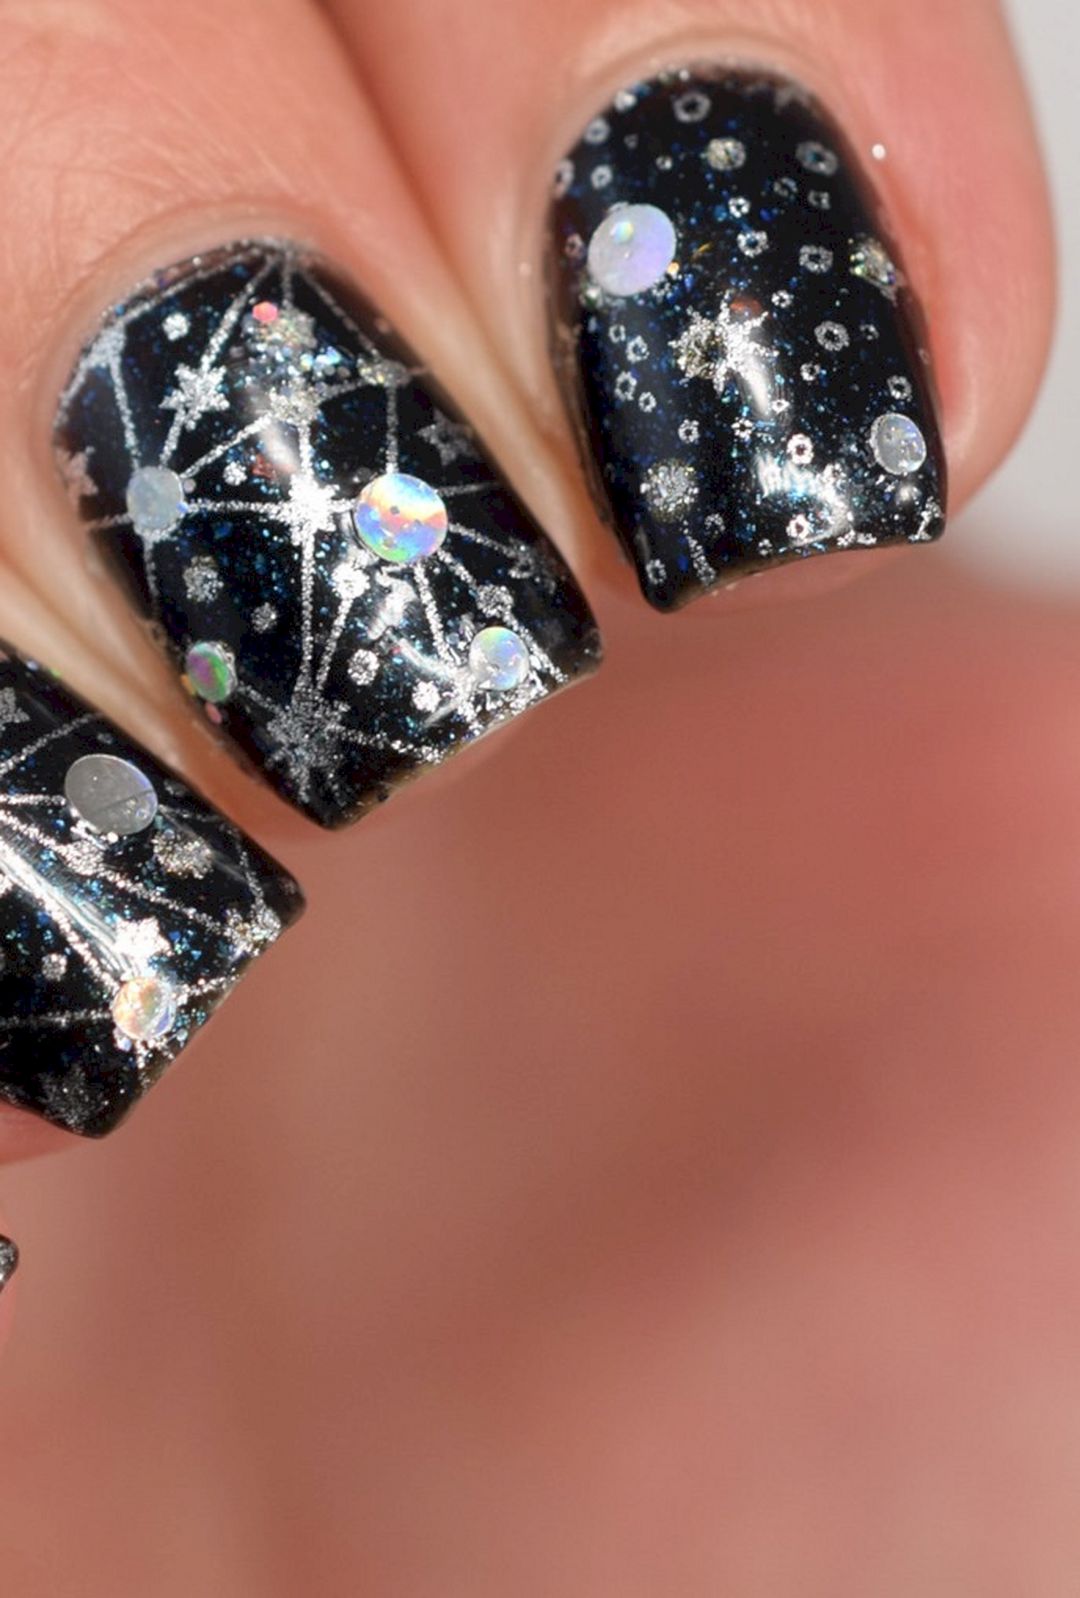 Constellation nail art from manicuremanifesto